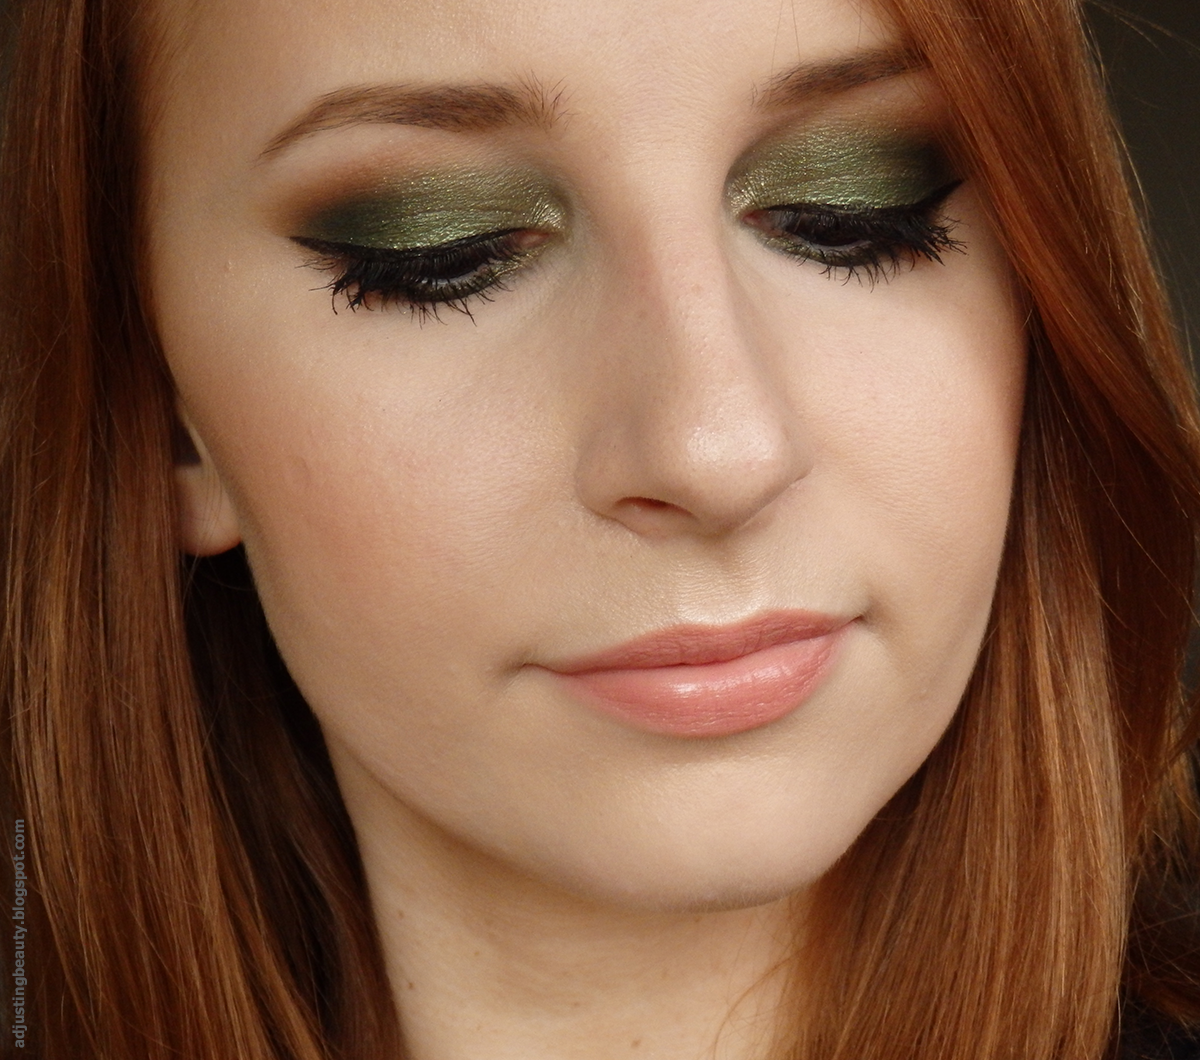 Forest green eye makeup - Adjusting Beauty